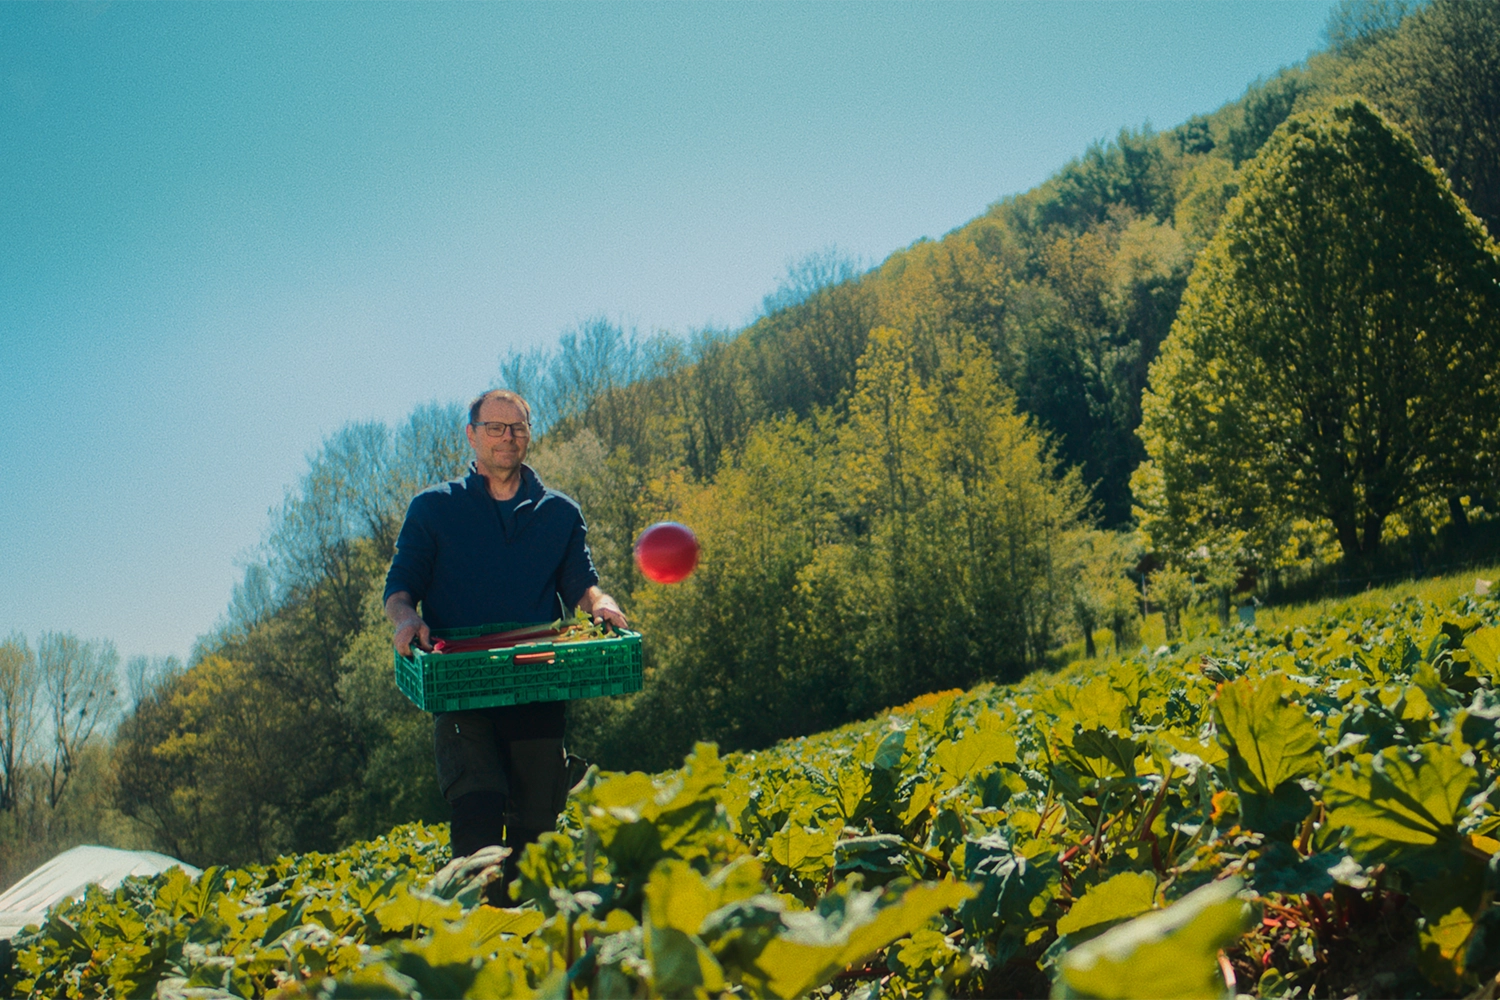 Image d'un monsieur marchant dans un champs avec une caisse de légumes dans les mains, un rond rouge flotte dans les airs